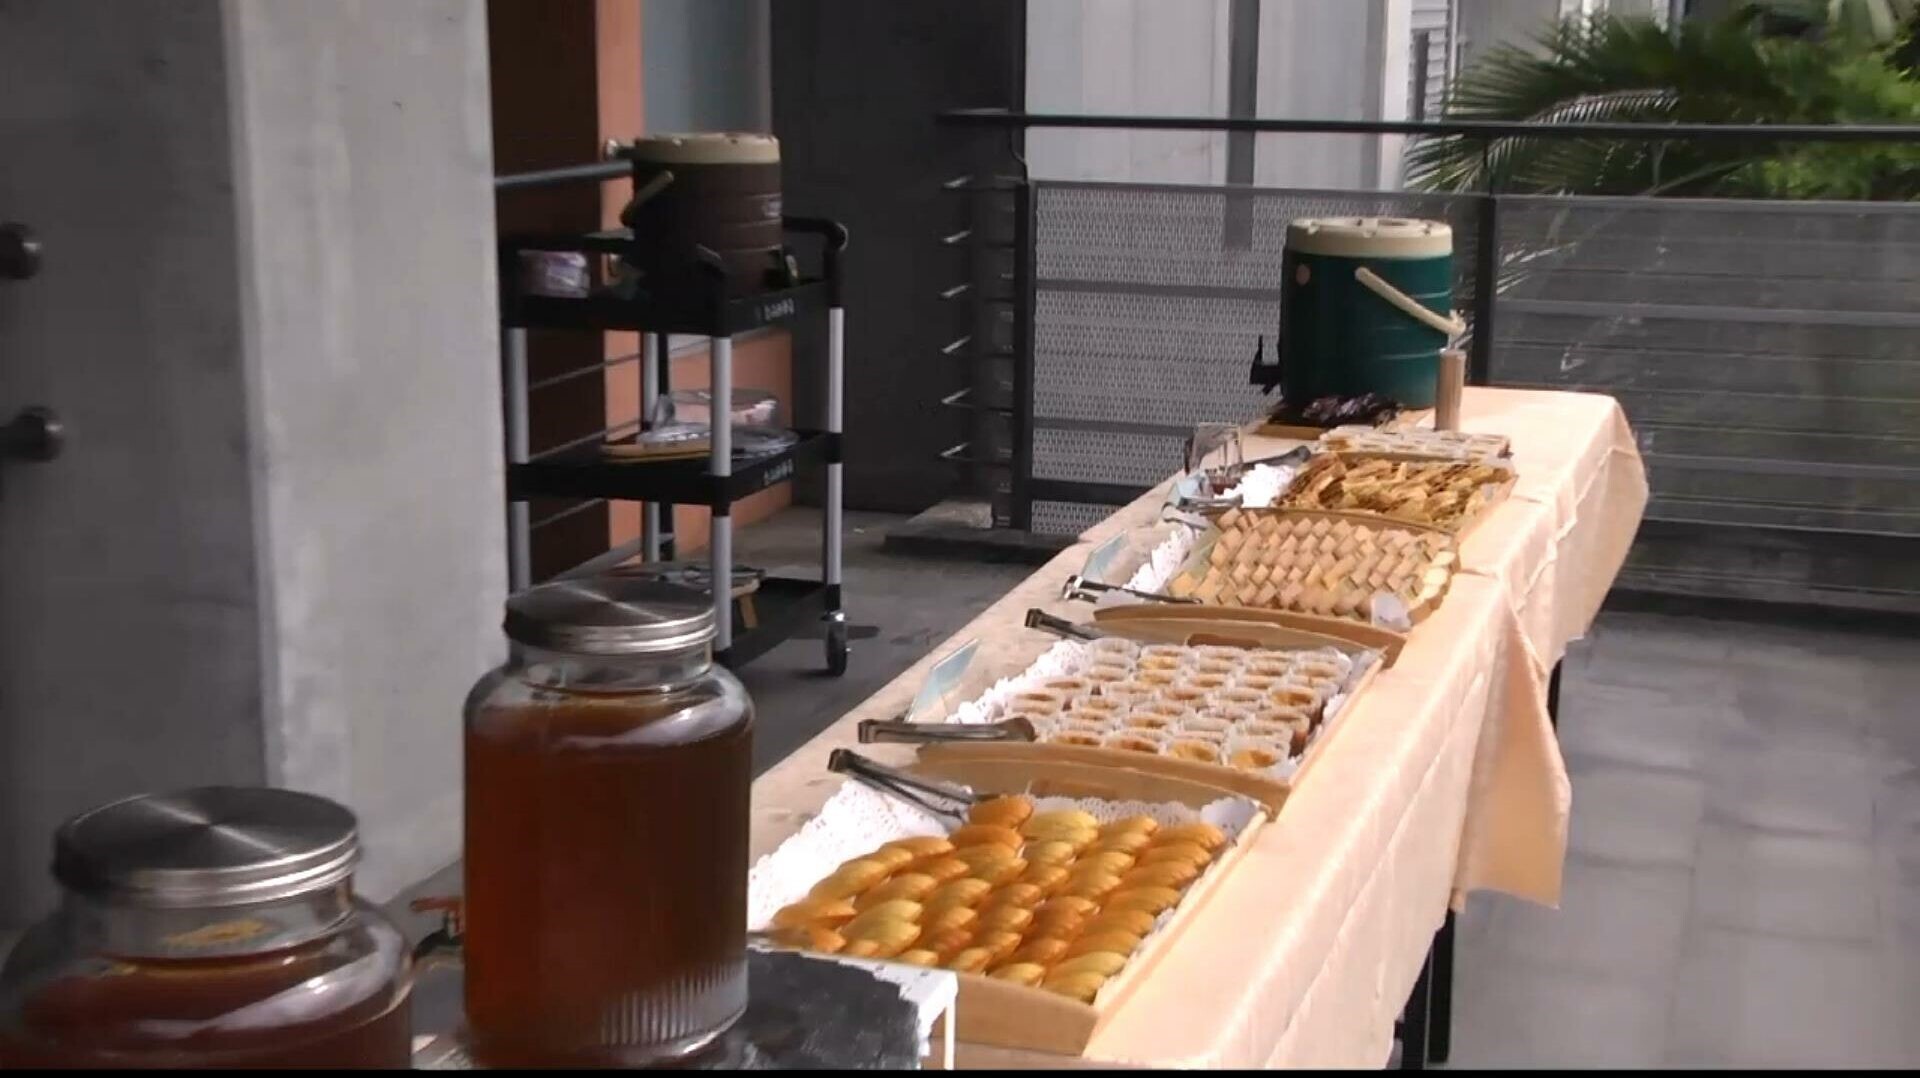 宜大為國際研討會準備的蜂蜜產品美食點心